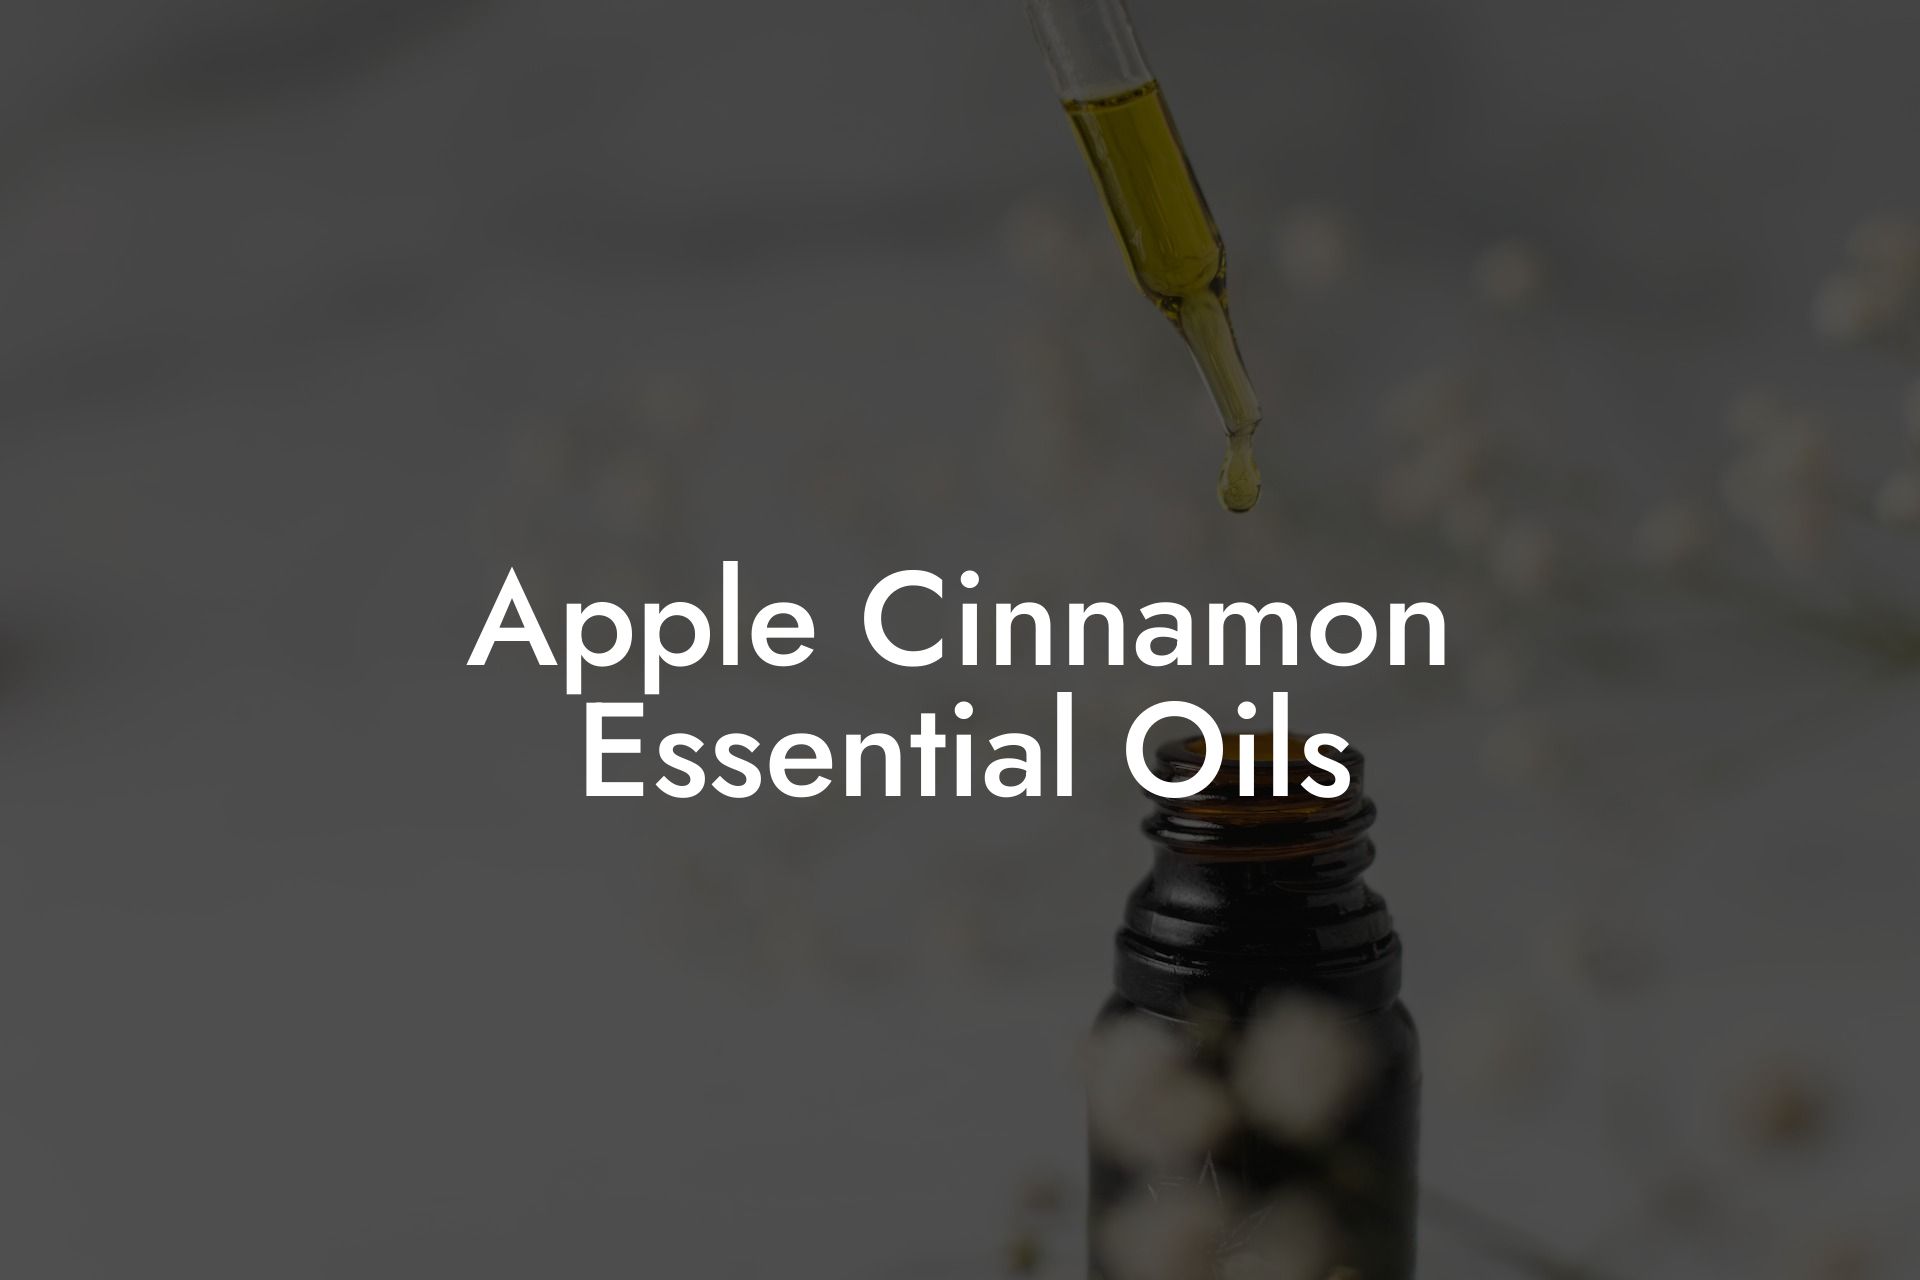 Apple Cinnamon Essential Oils